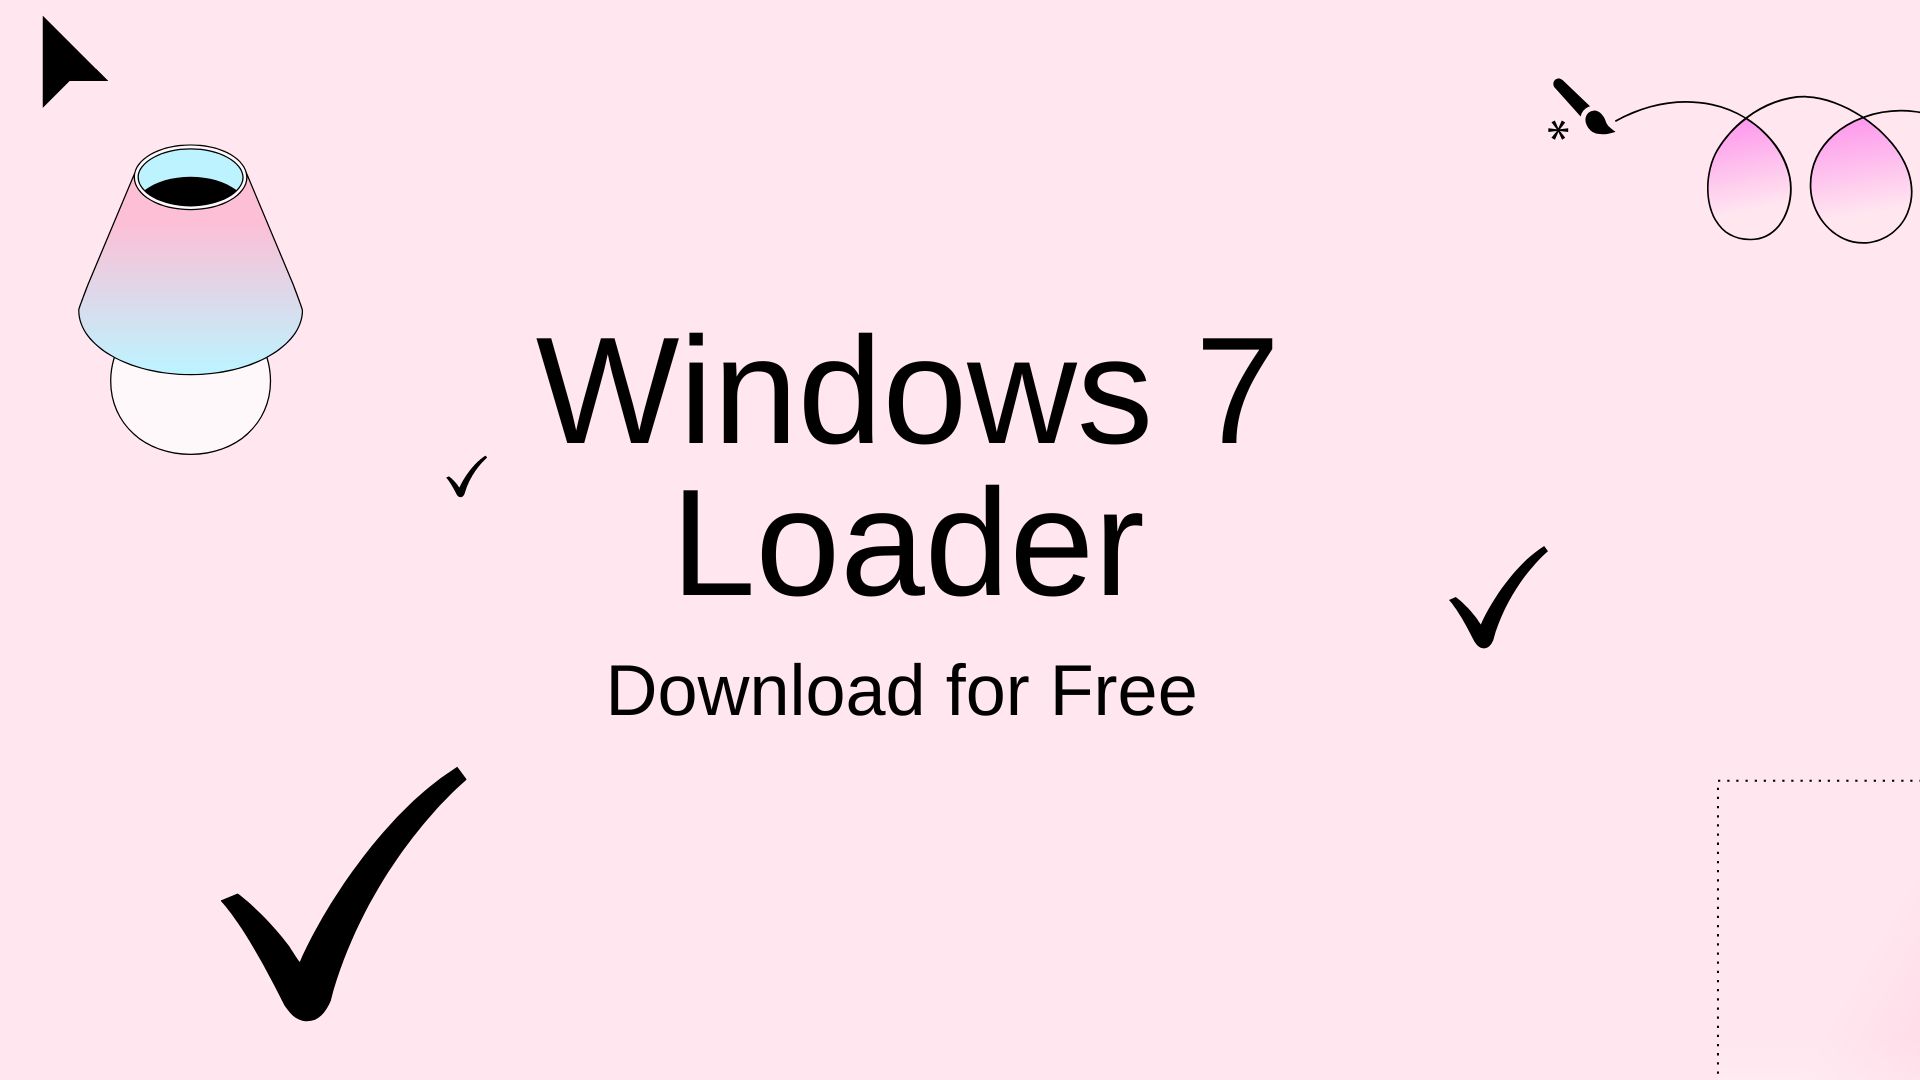 Windows 7 Loader Download for Free